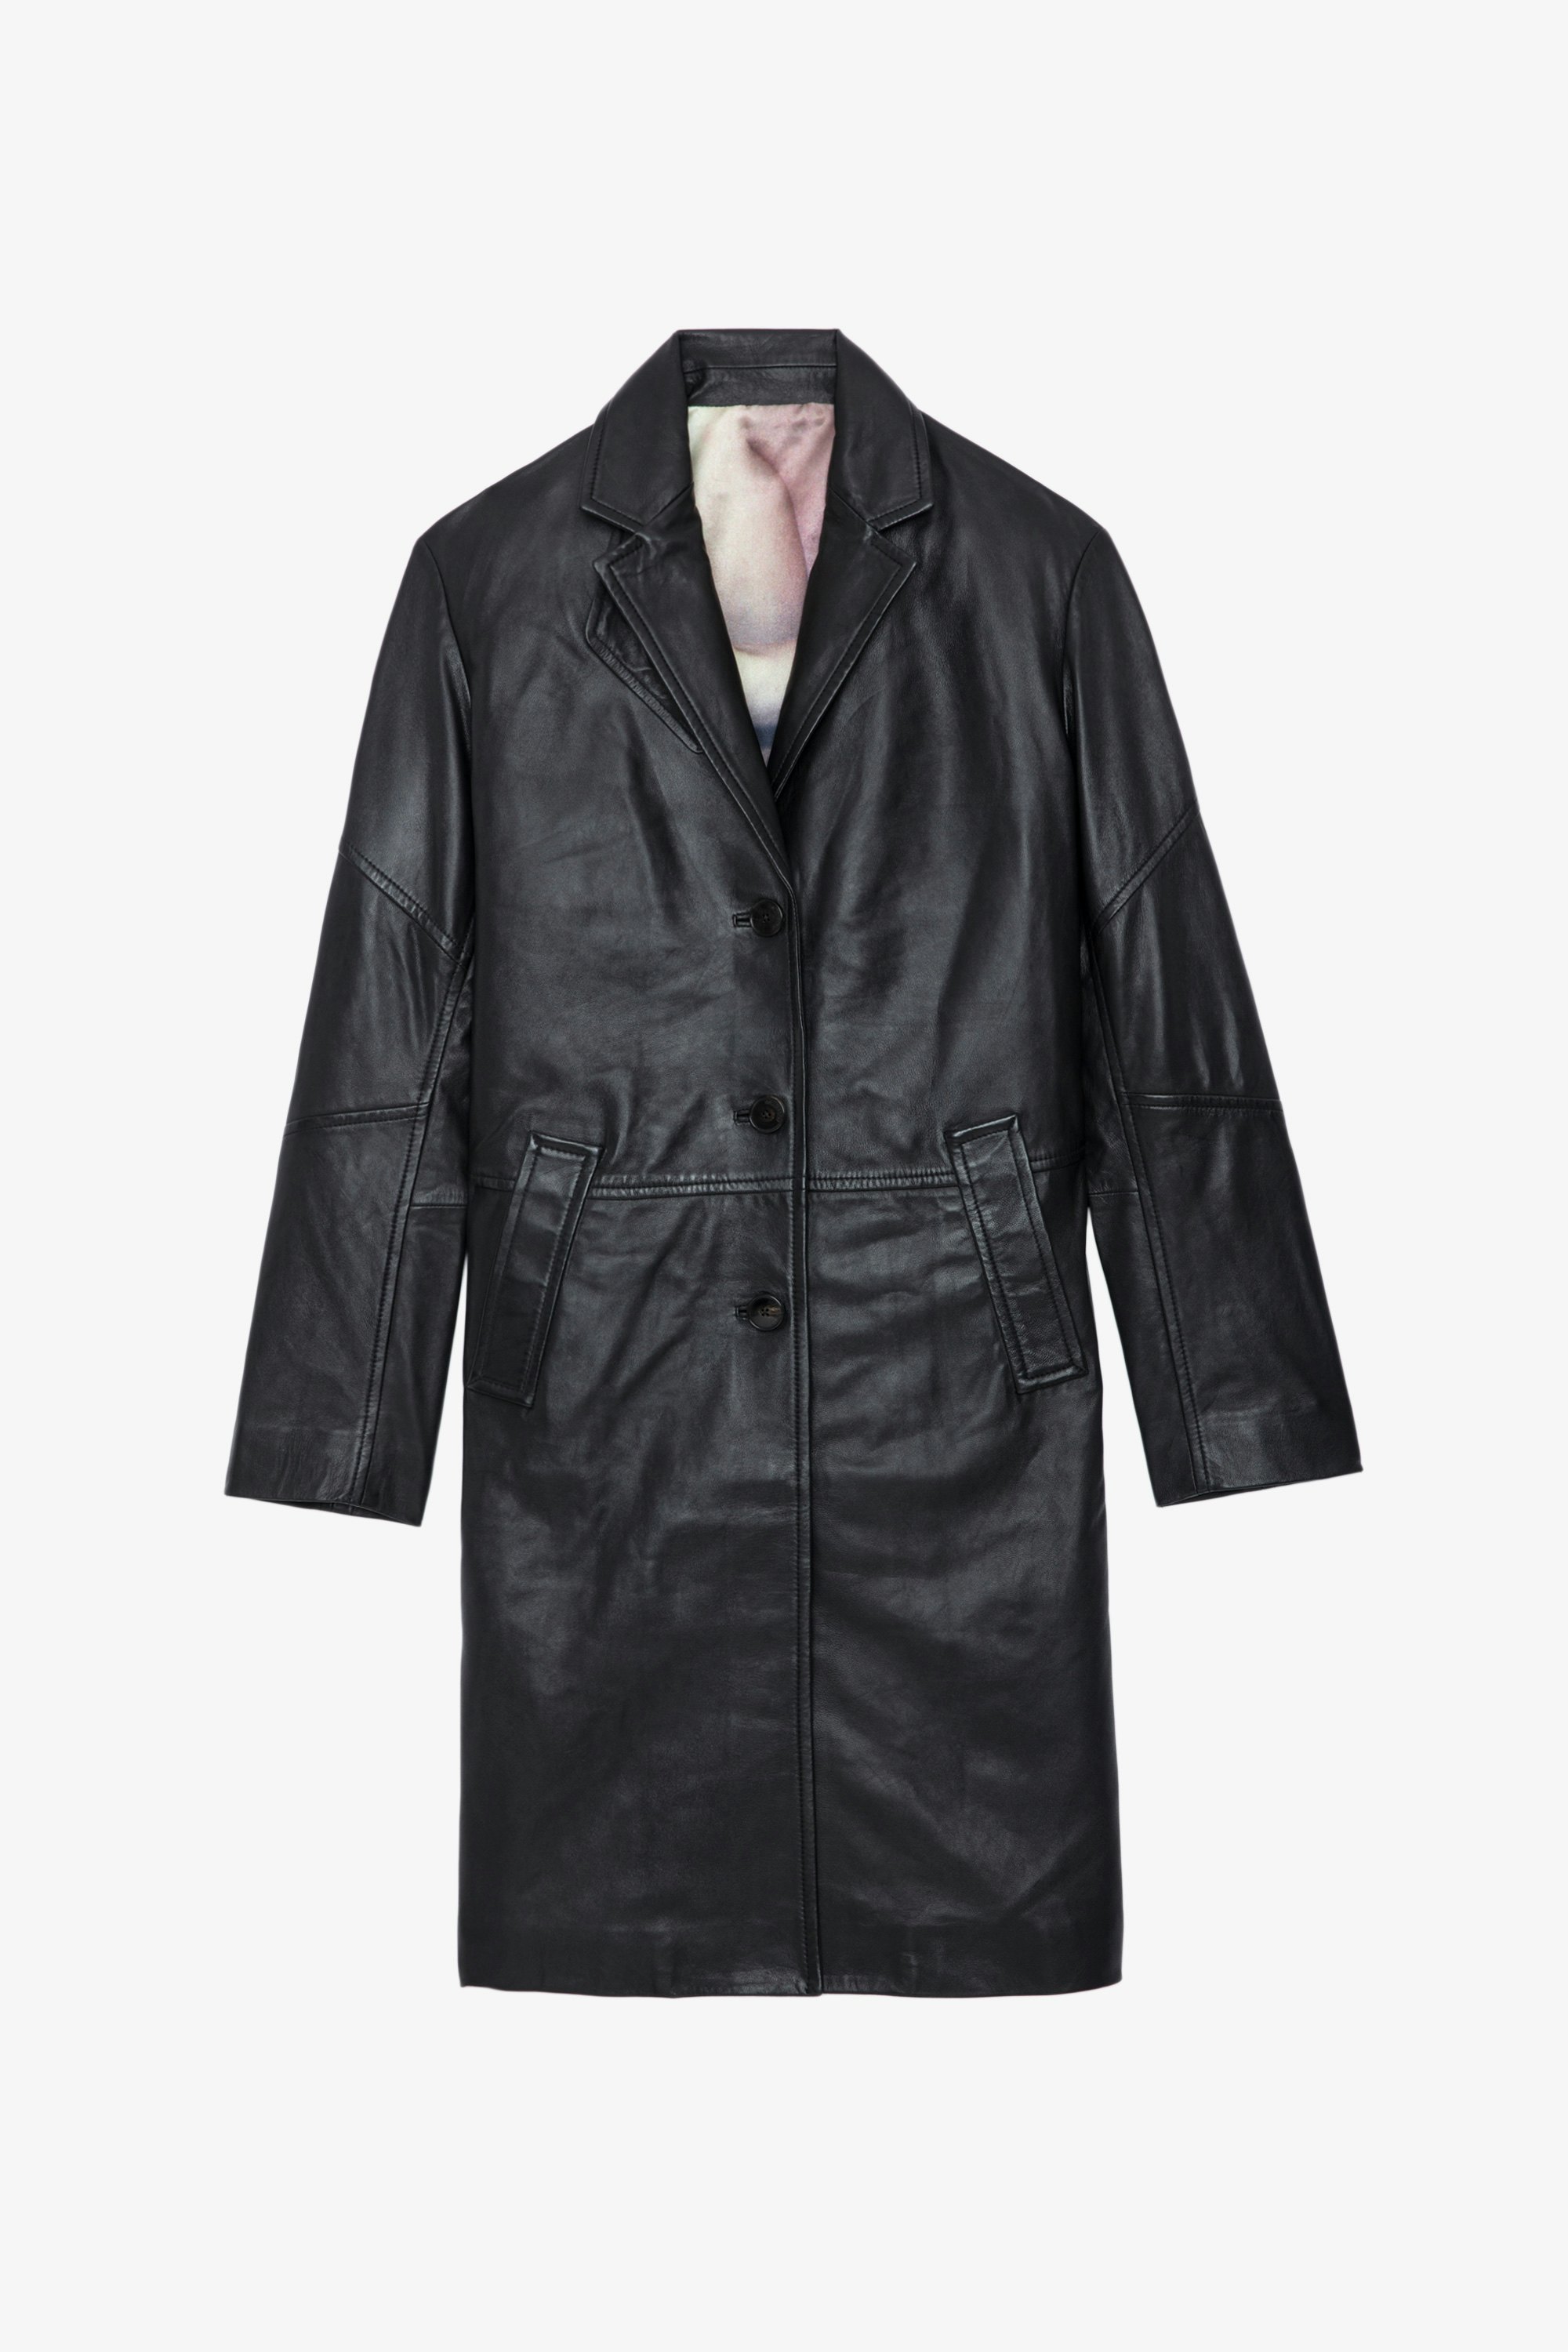 Manteau Macari Cuir - Manteau long boutonné en cuir lisse noir.